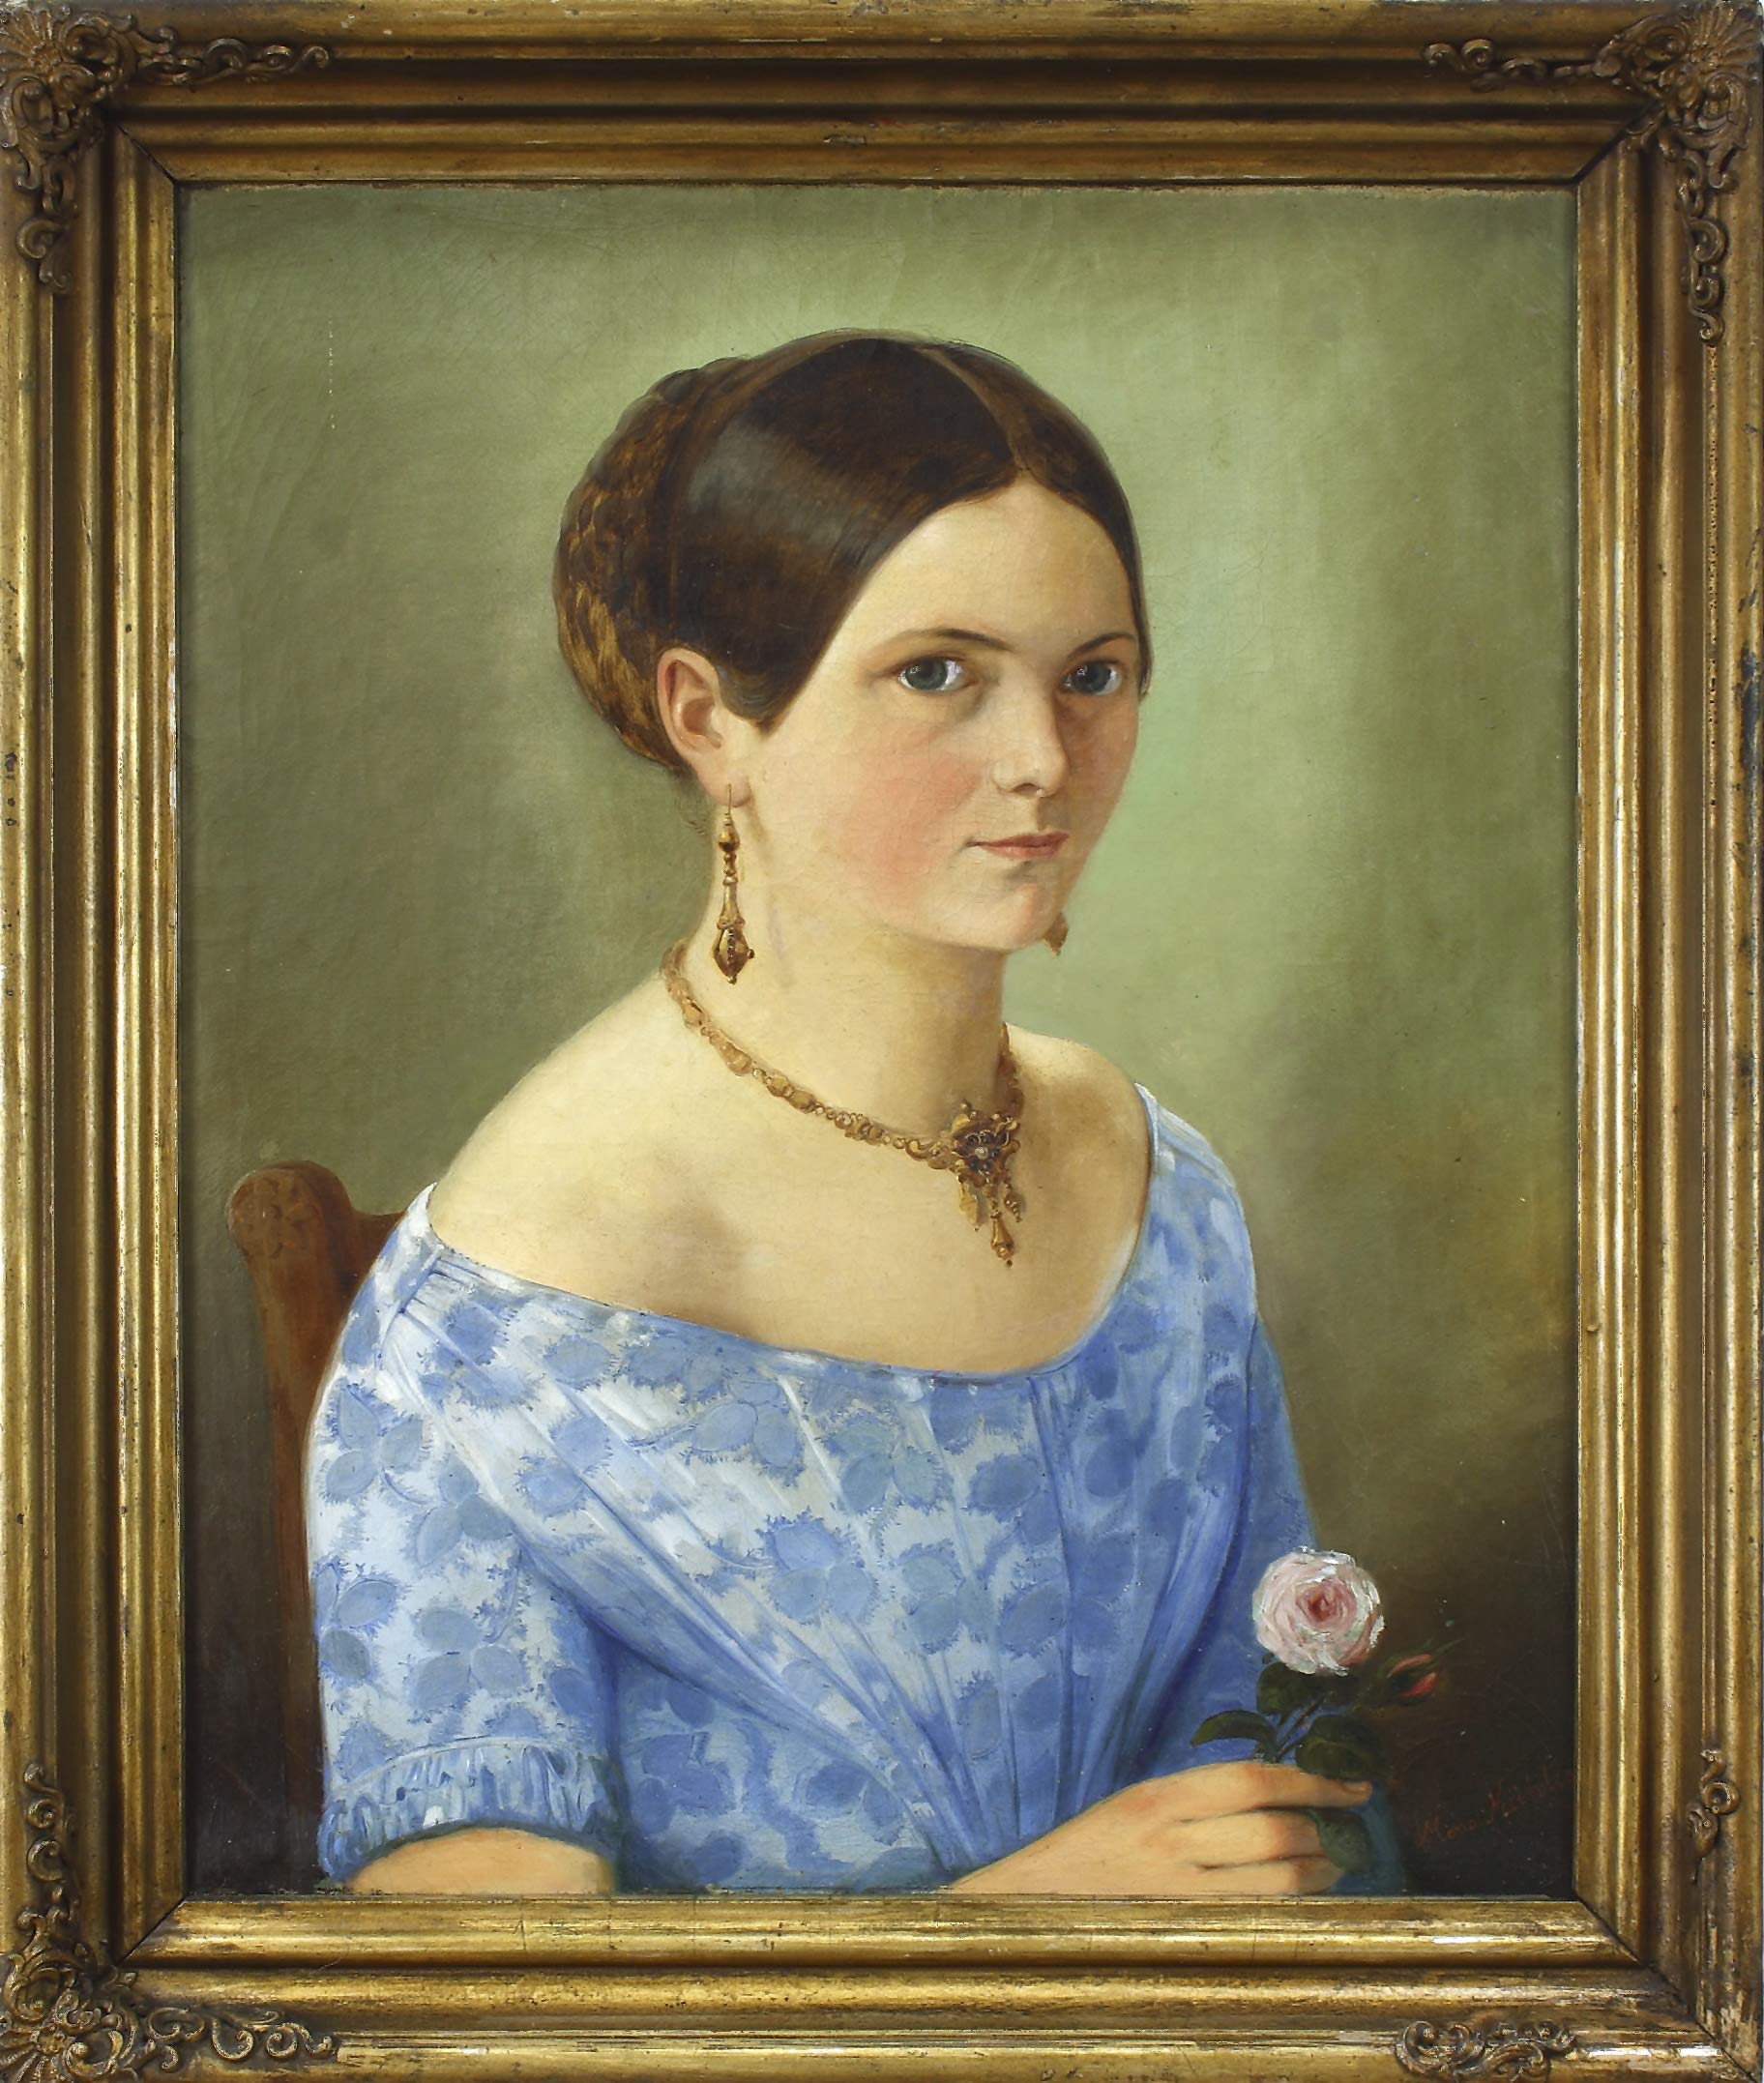 Auktionshaus Quentin Berlin MÃ¼hlig  Meno (1823 Eibenstock - 1873 Dresden) Bildnis einer jungen Frau in blauem Kleid  auf einem Stuhl sitzend. Ãl auf Leinwand. 42 x 34 5 cm.